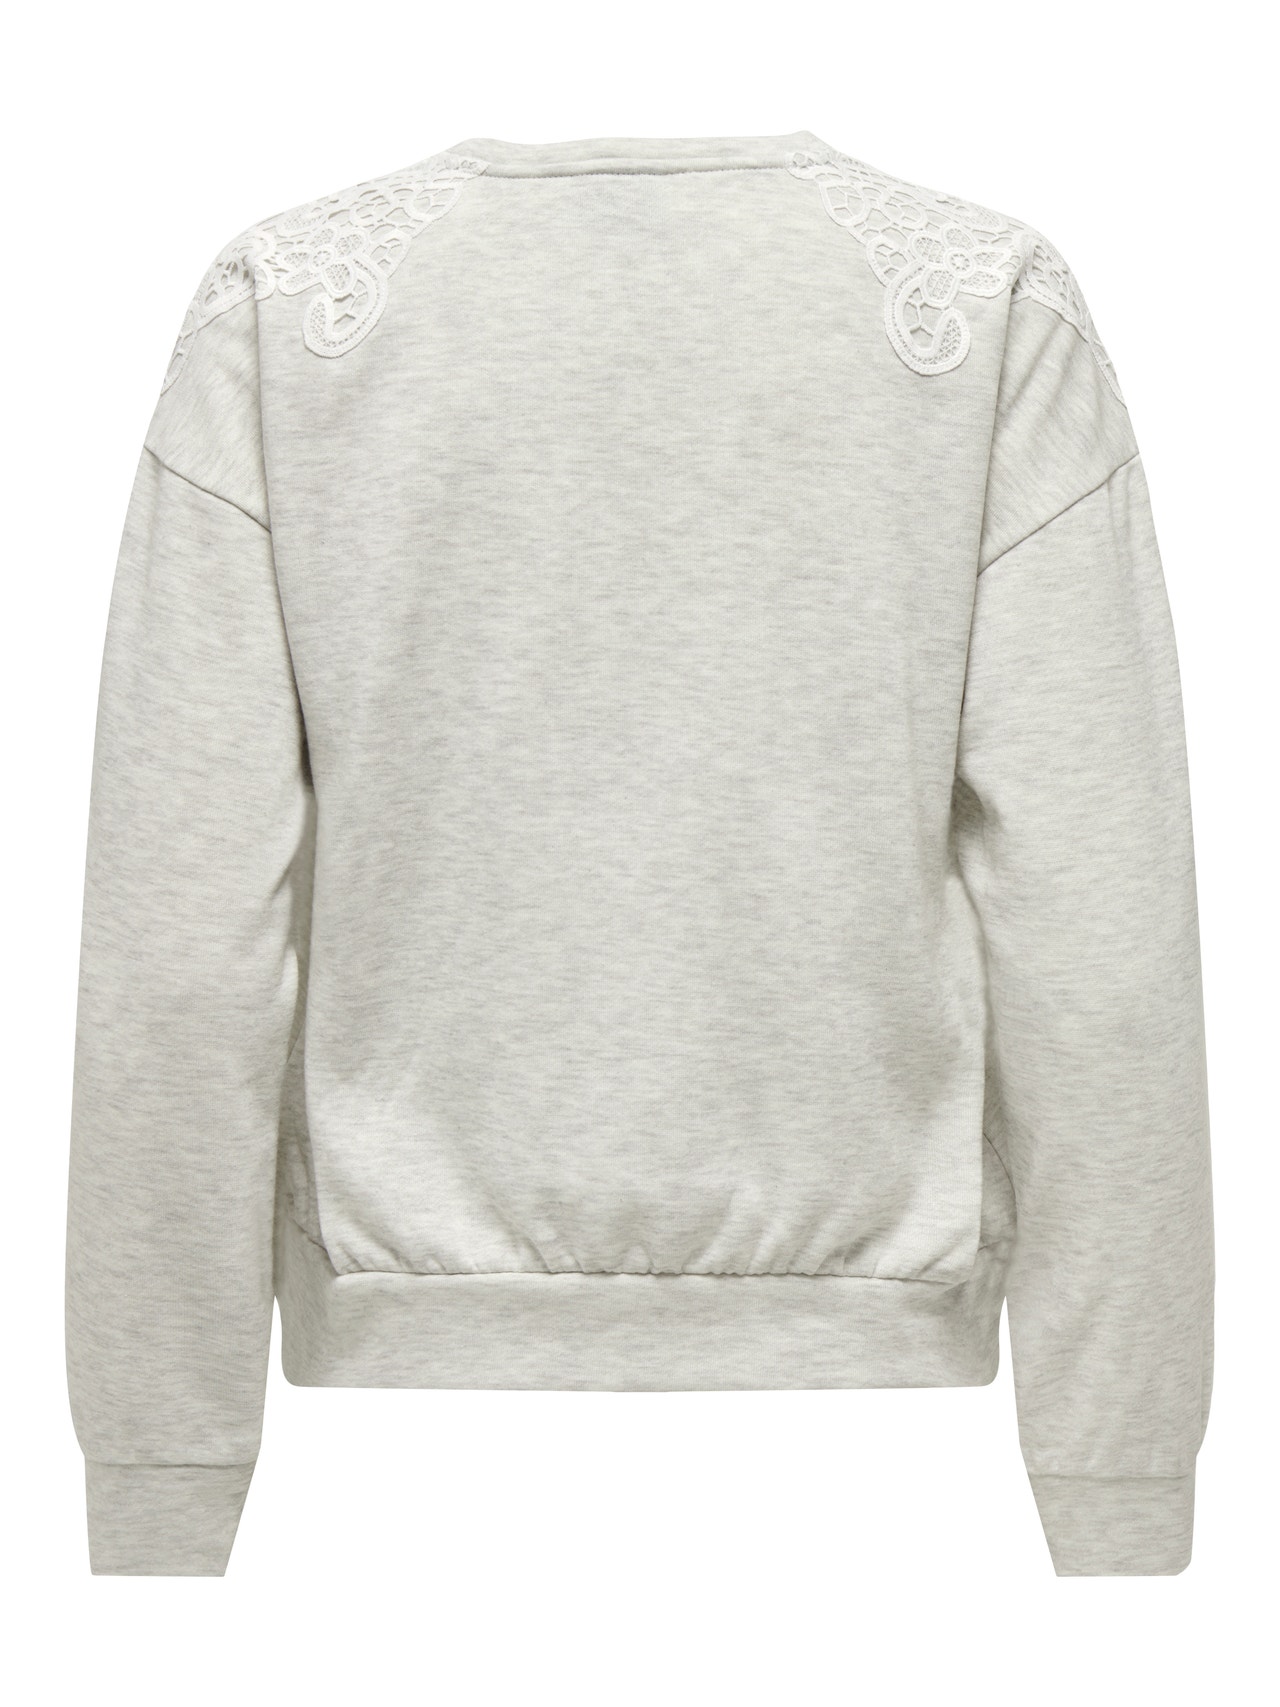 ONLY Normal geschnitten Rundhals Sweatshirt -Light Grey Melange - 15302639